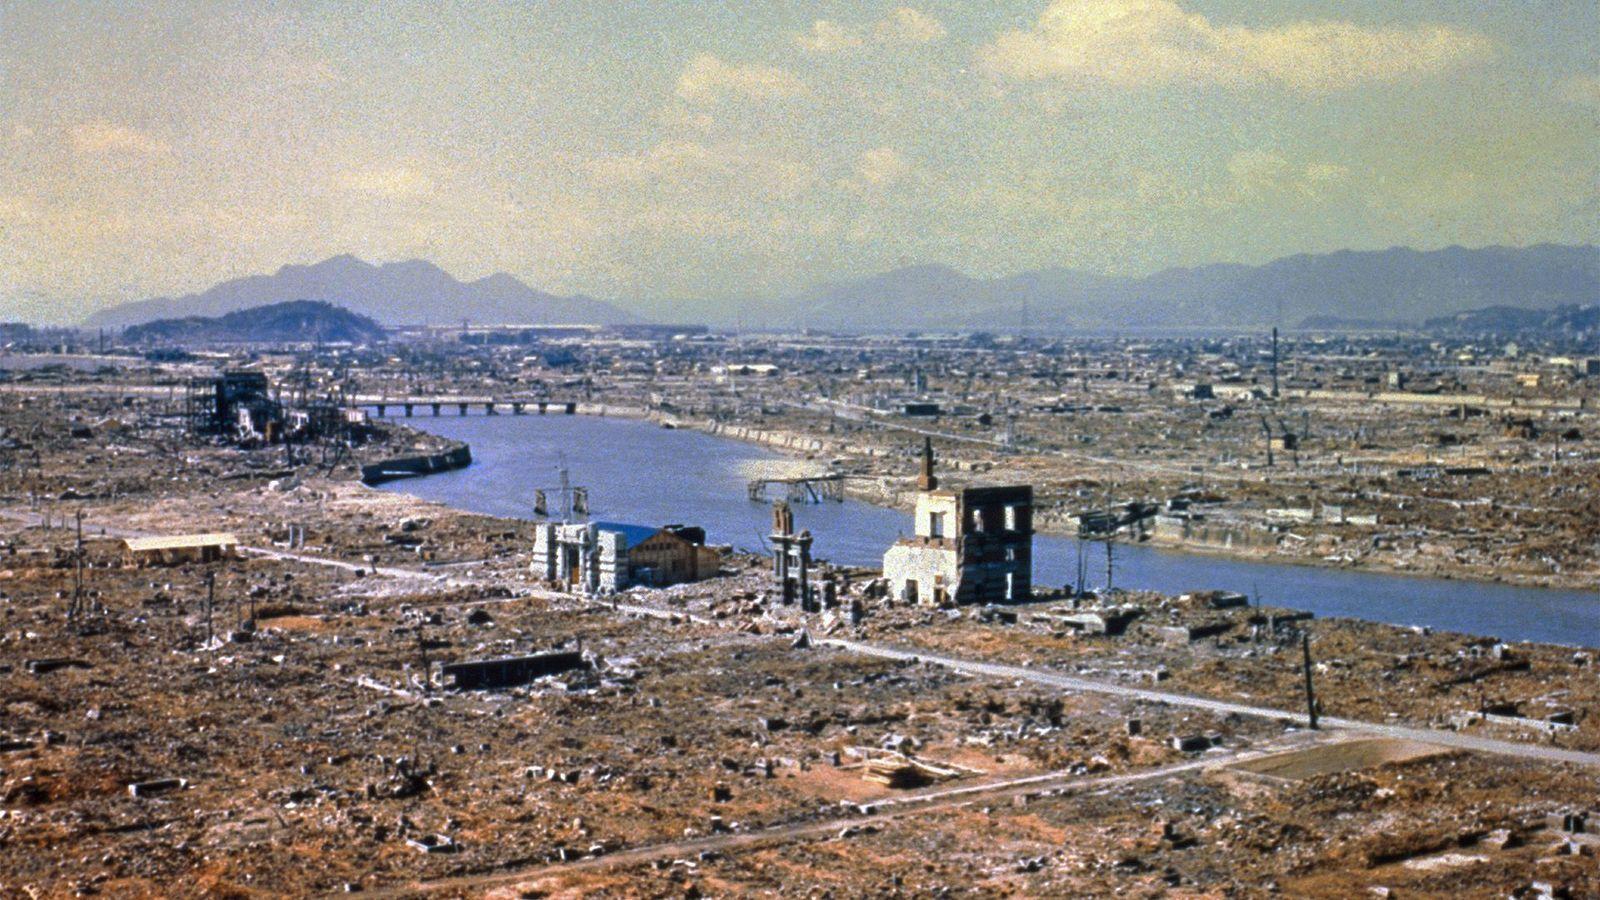 Devastación en Hiroshima después de la bomba atómica